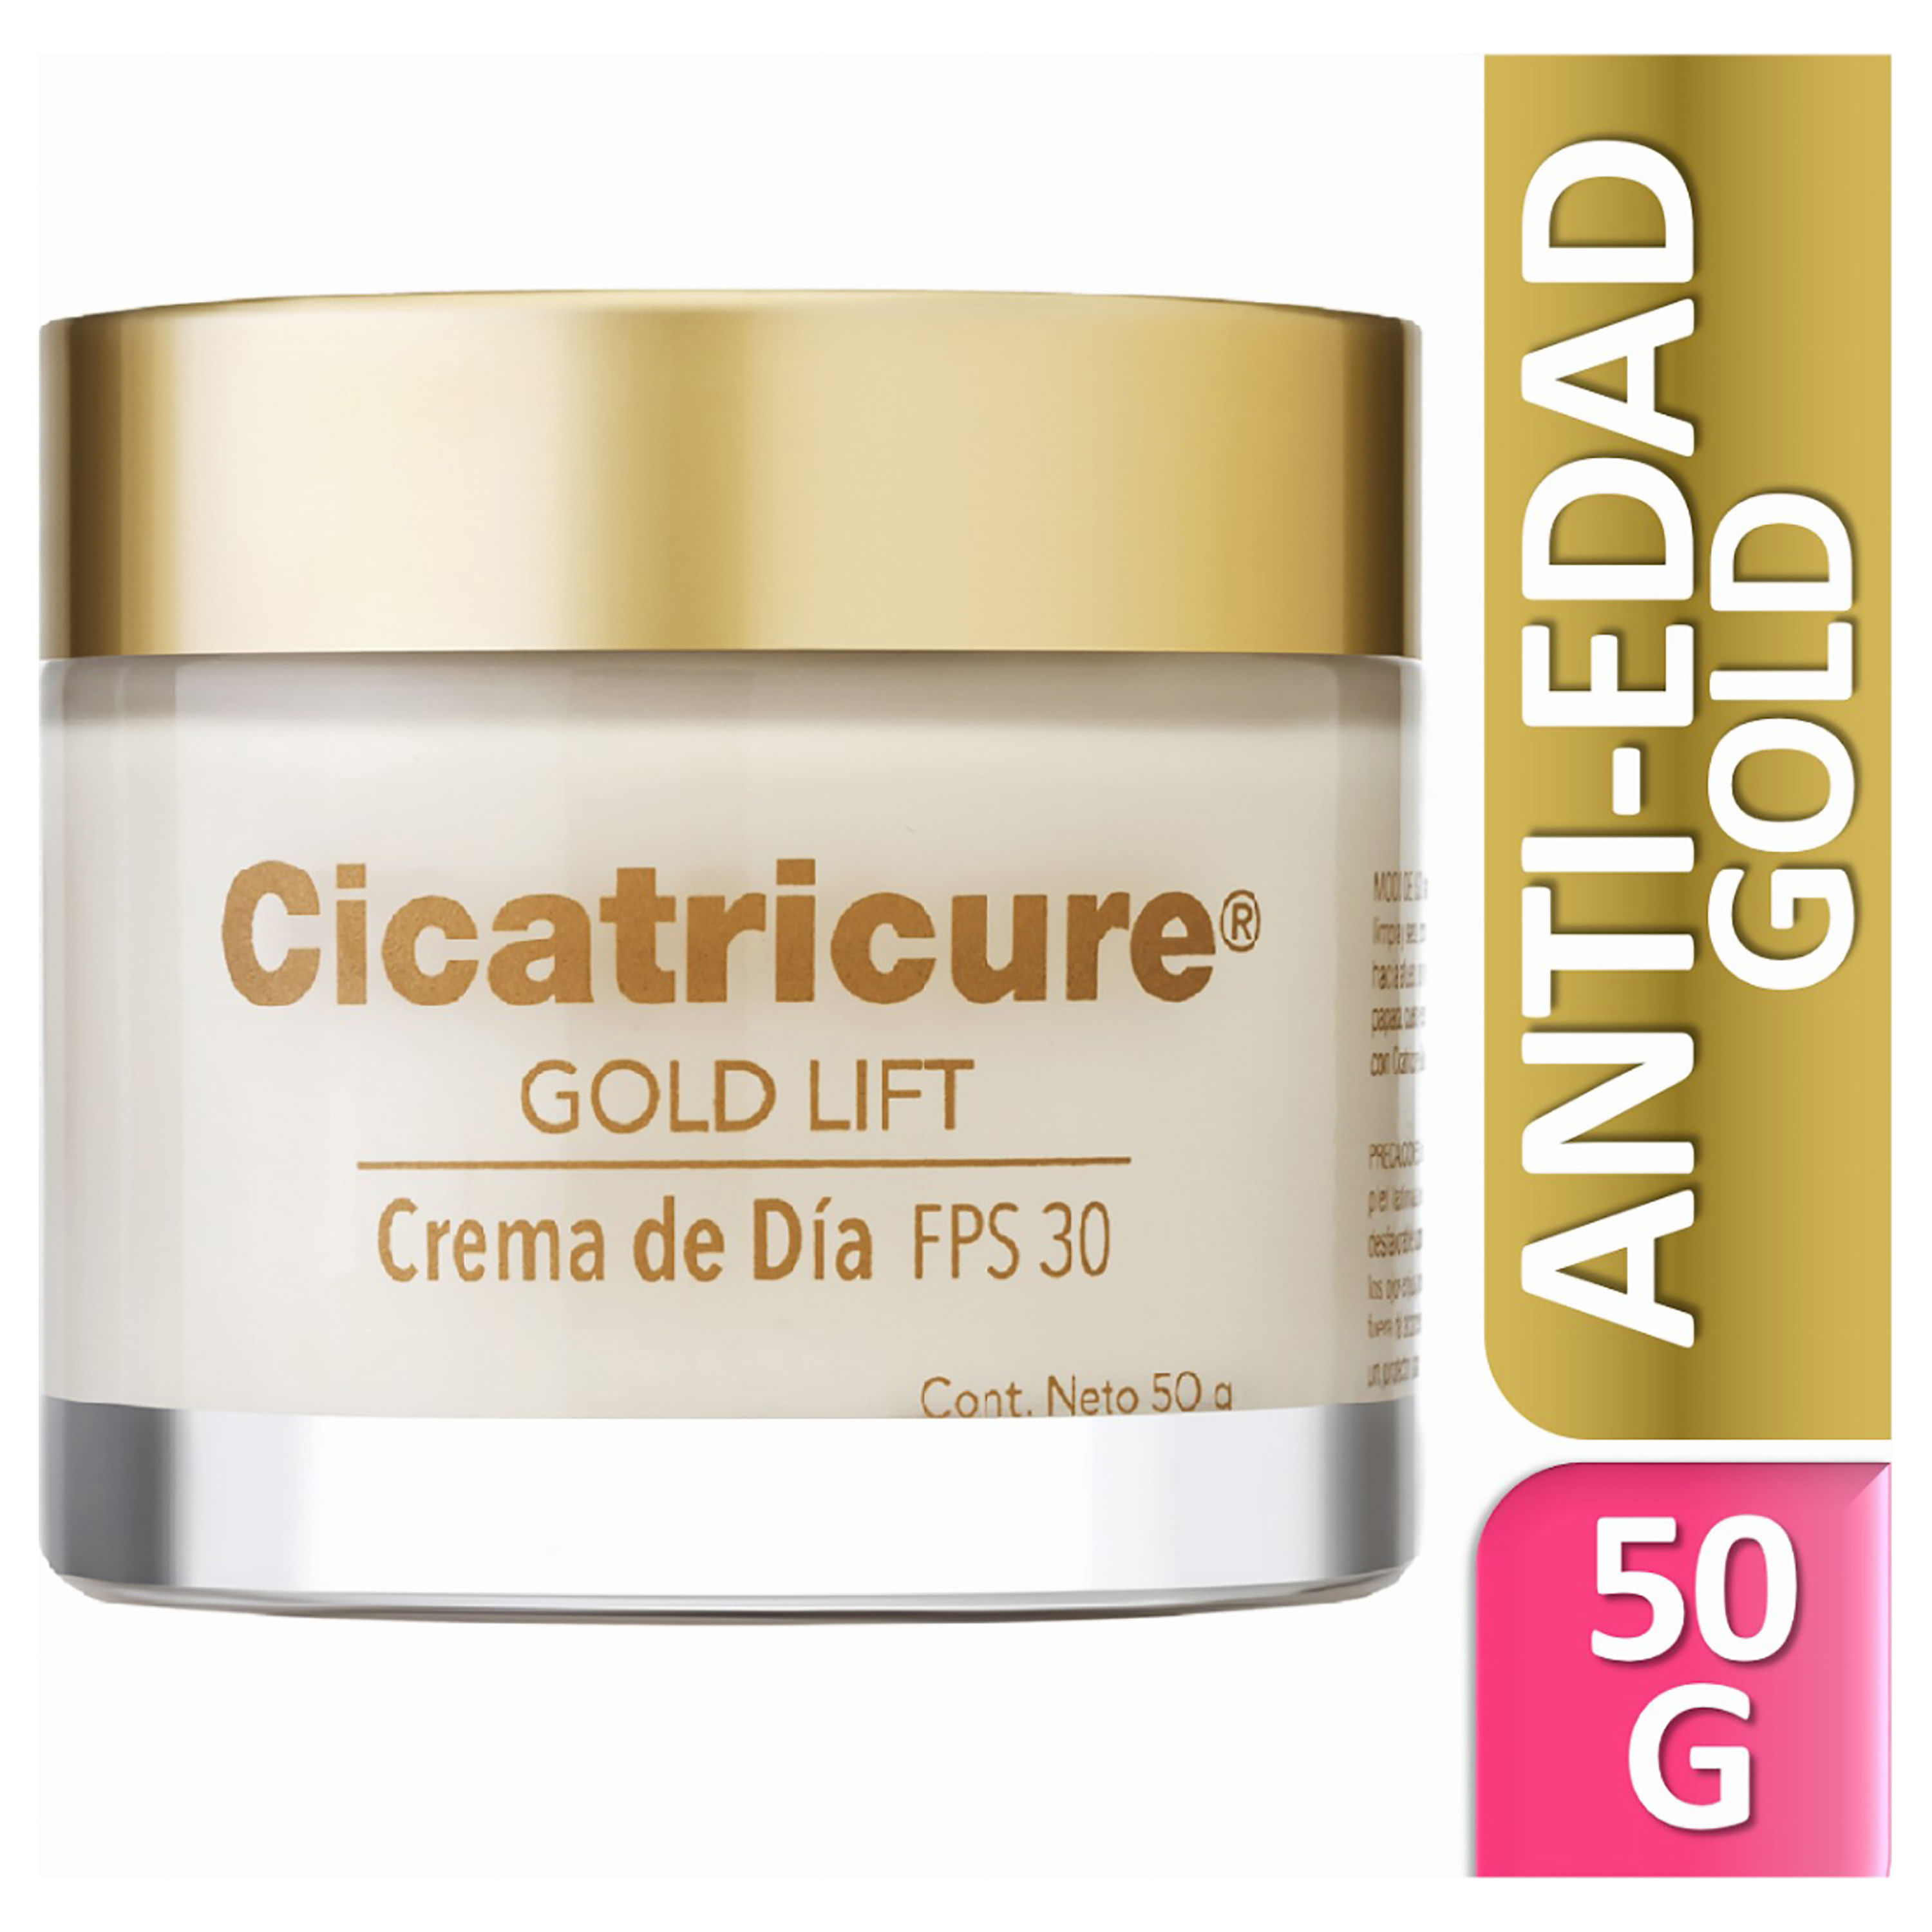 Crema-Facial-Gold-Lift-D-a-Cicatricure-1-39853